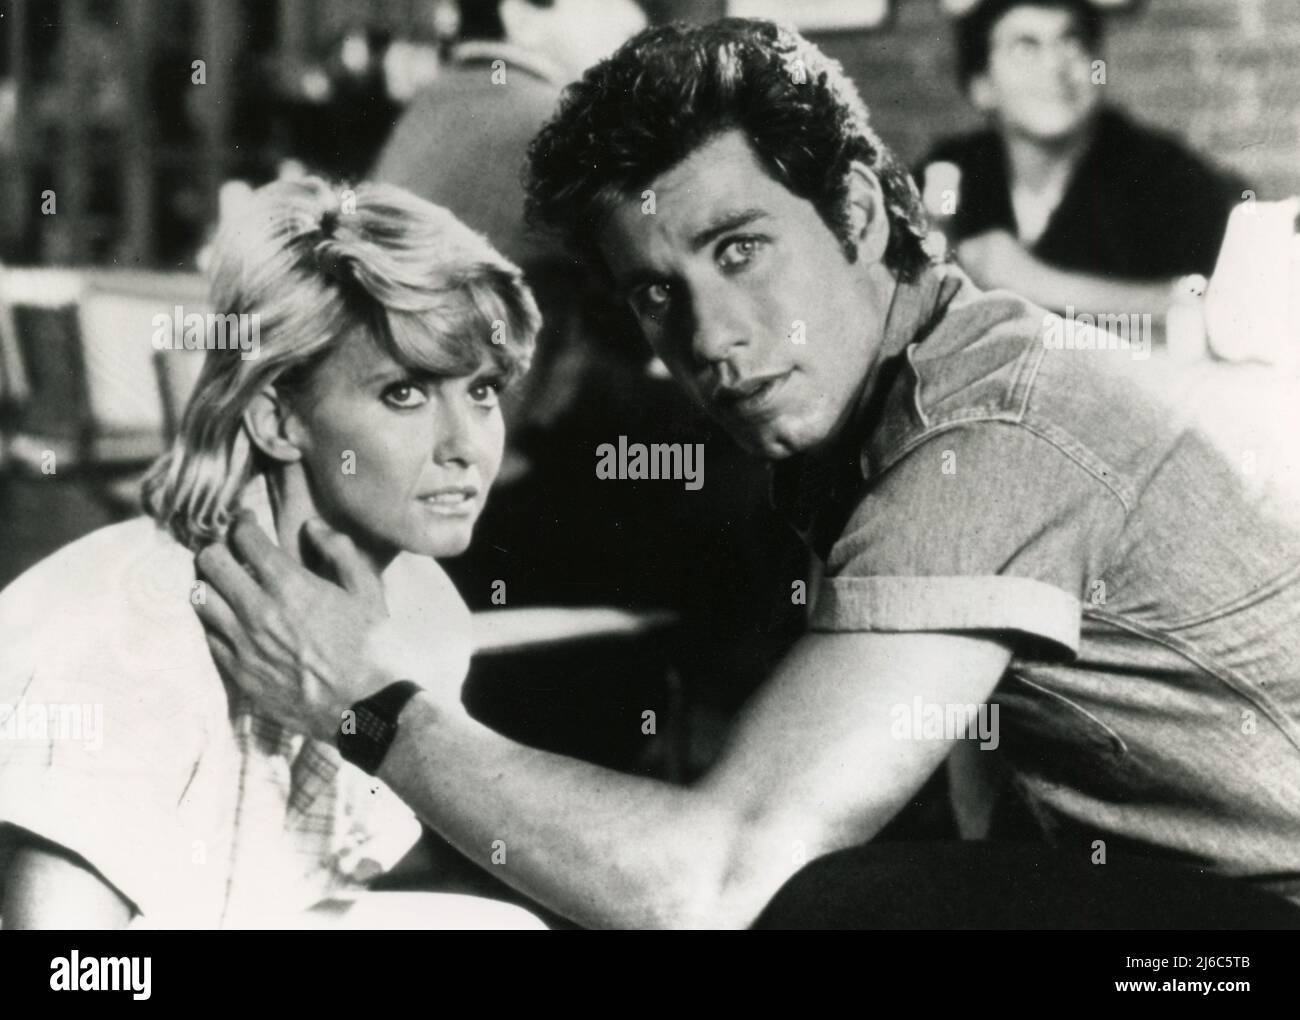 L'acteur américain John Travolta et l'actrice Olivia Newton-John dans le film Two of a Kind, USA 1983 Banque D'Images